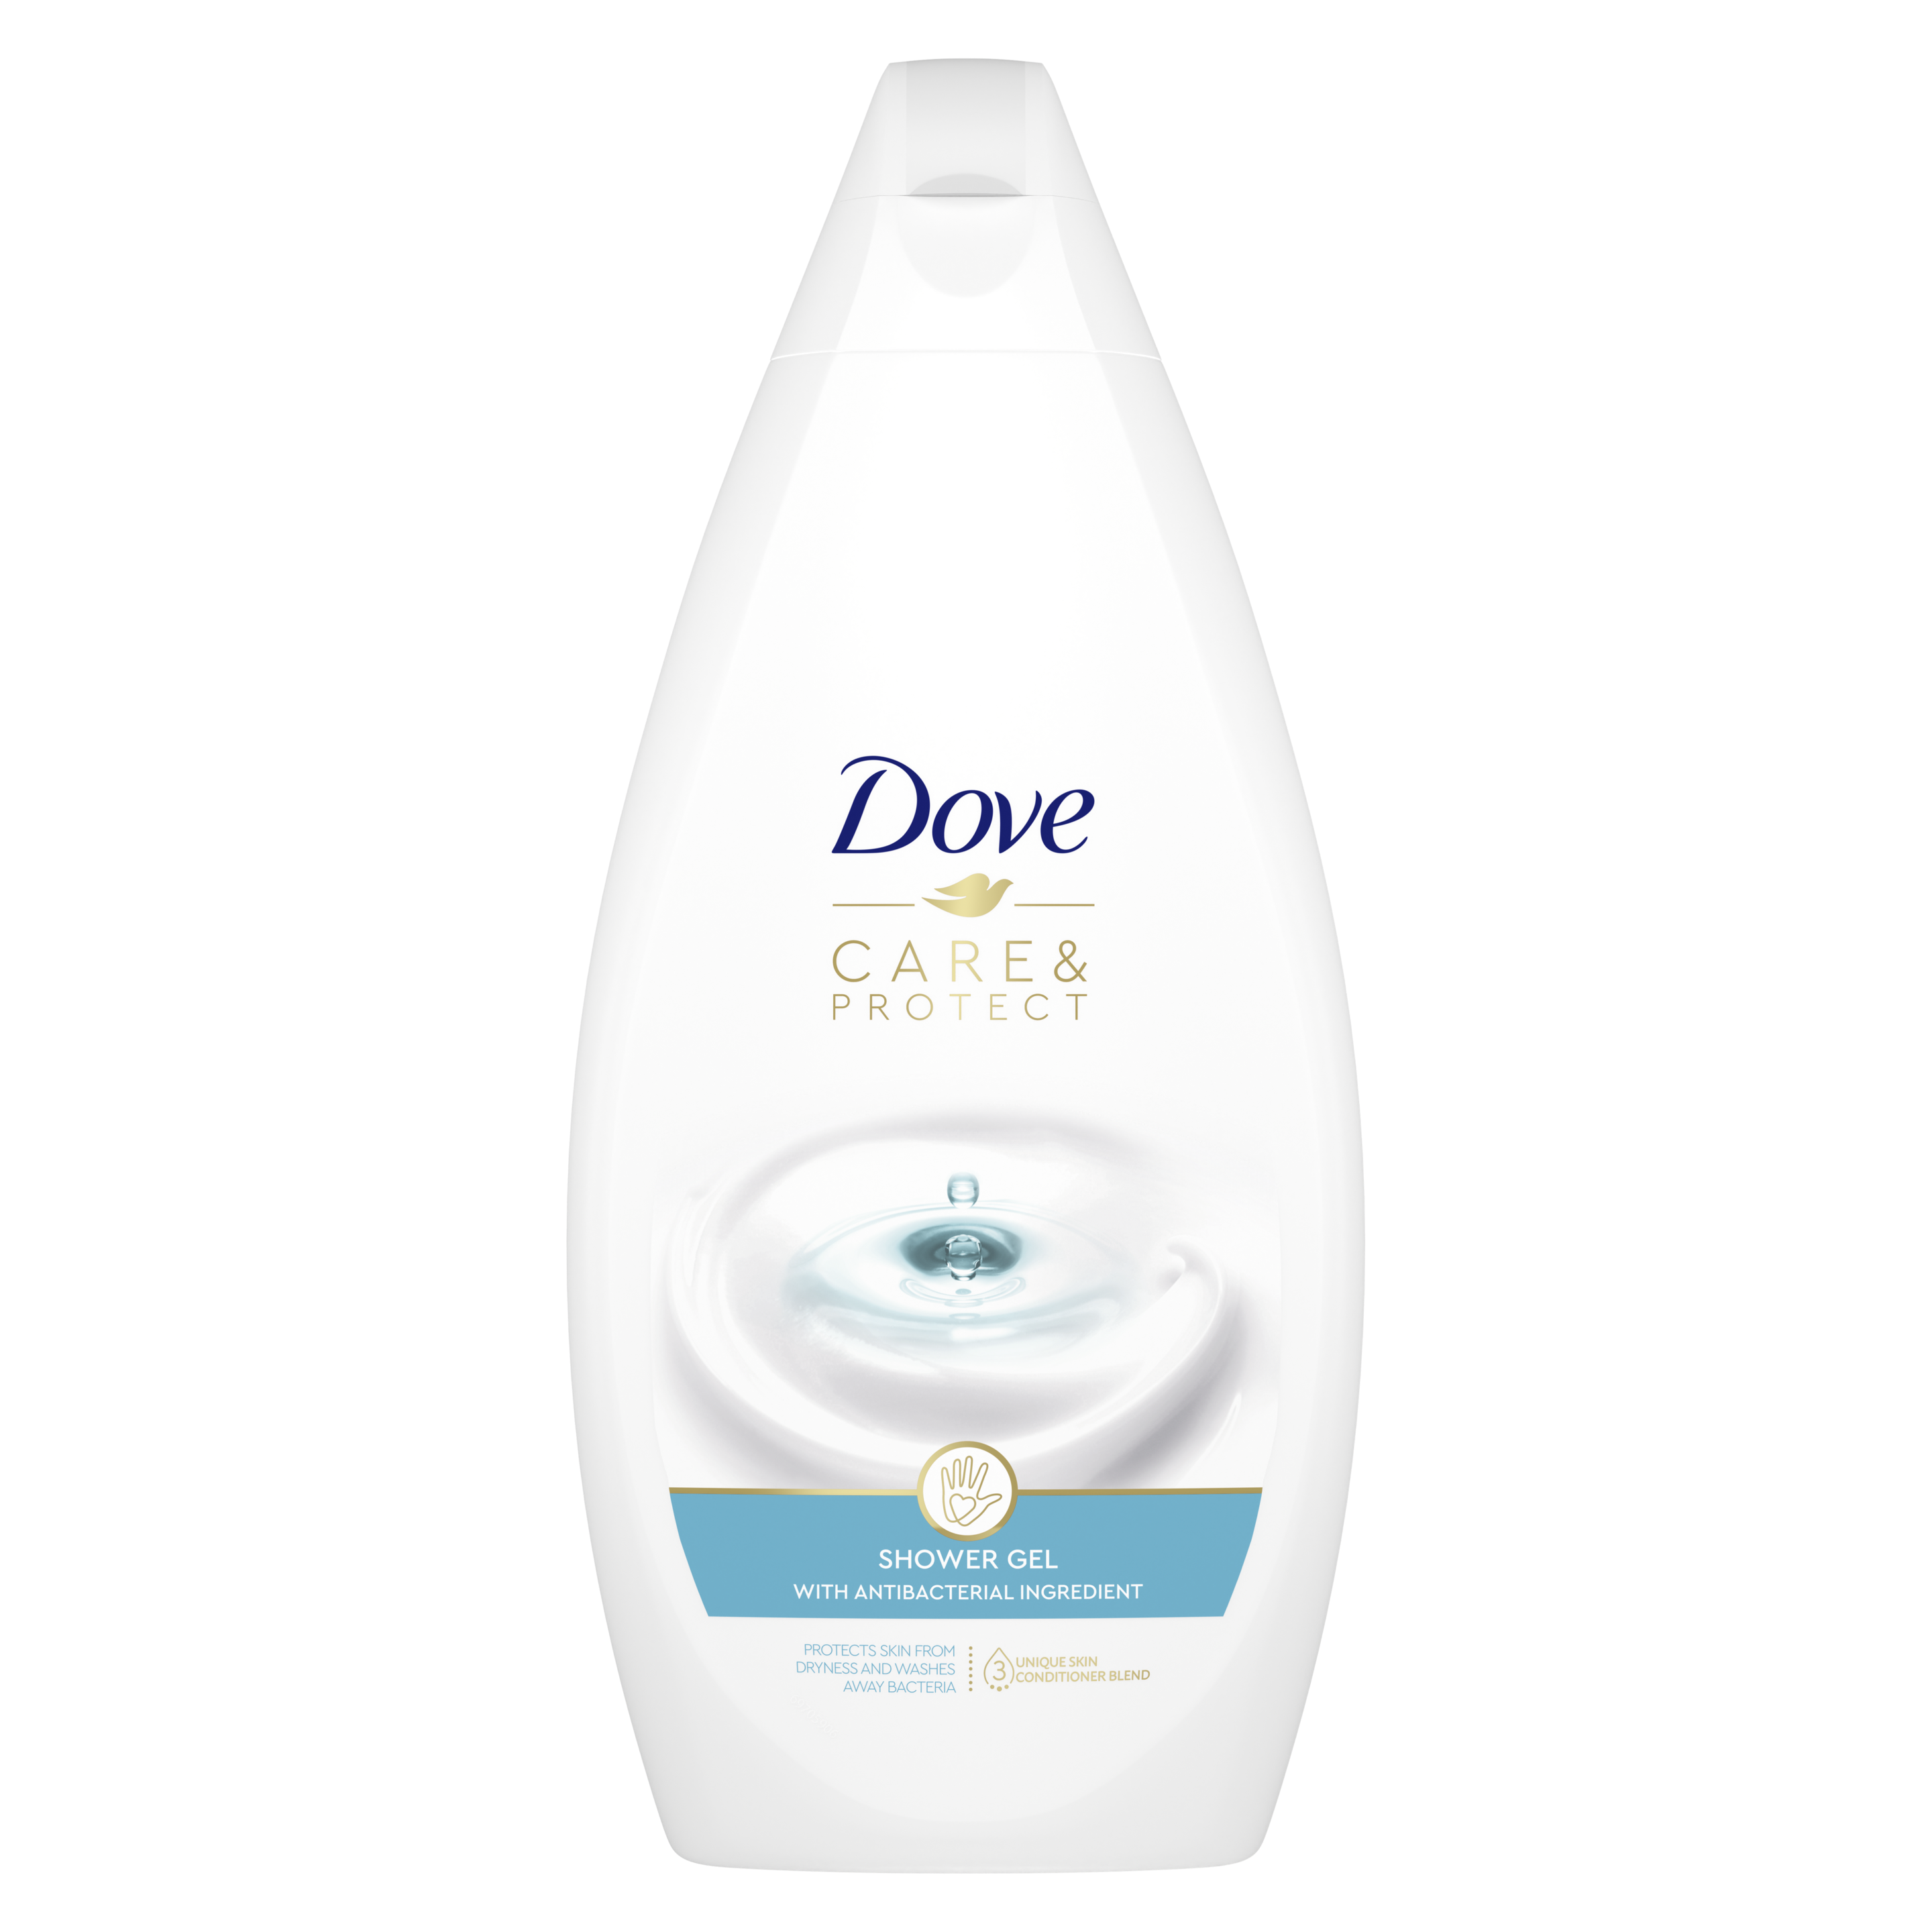 Żel pod prysznic Dove Care&Protect ze składnikiem antybakteryjnym